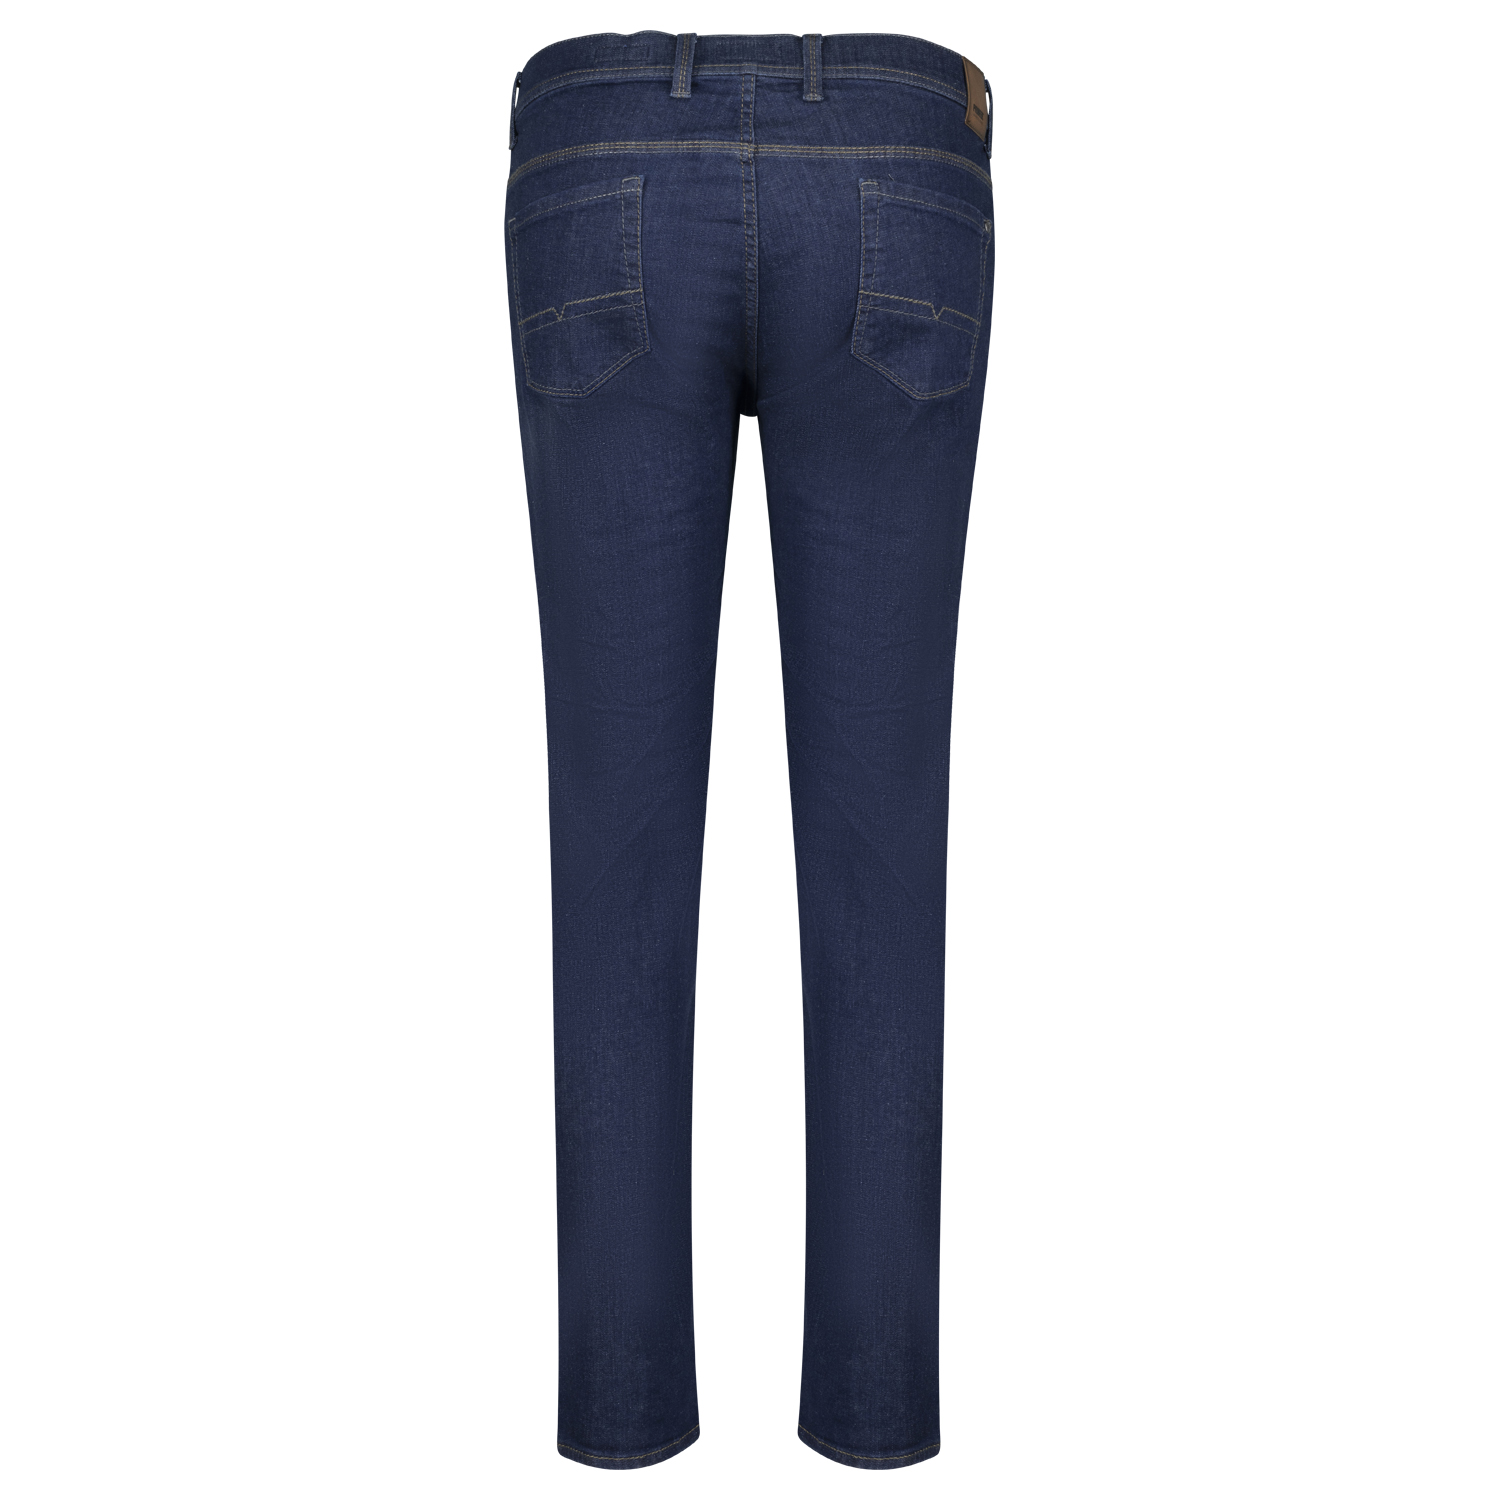 5-Pocket Jeans untersetzte Größen Modell "Thomas" Megaflex von Pioneer in 28 - 40 dark blue stonewash